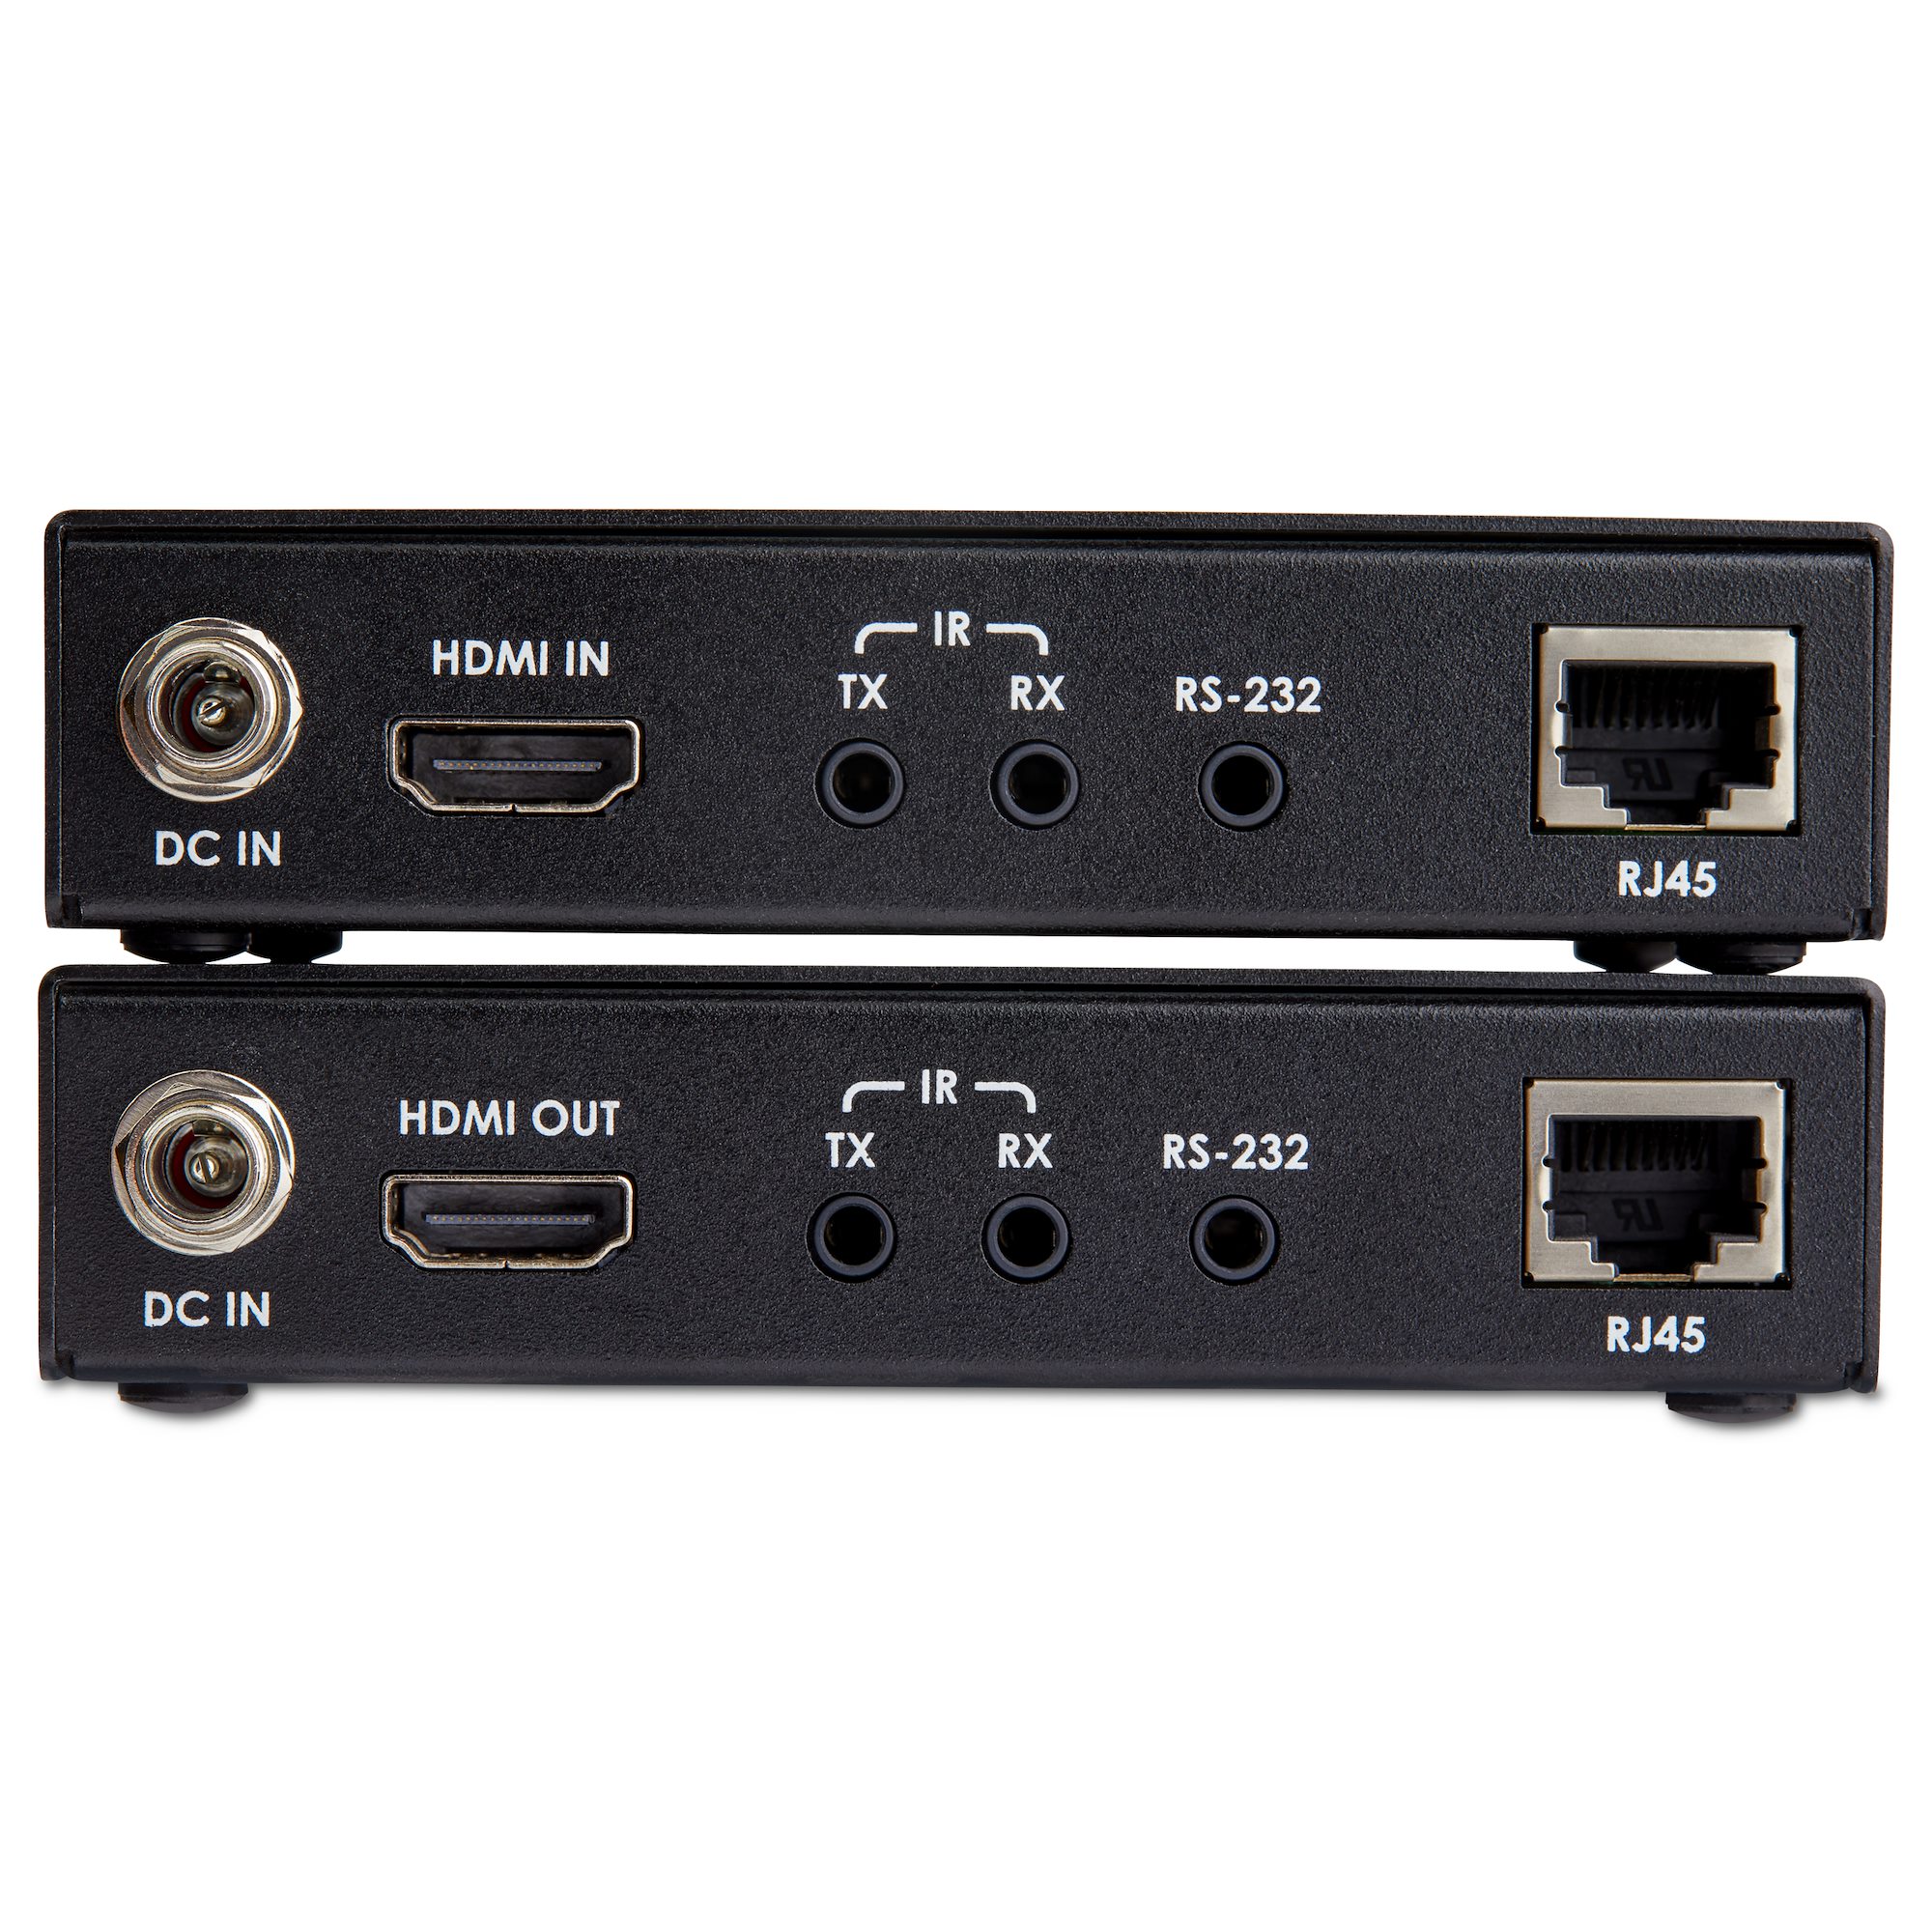 生まれのブランドで HDBaseT対応HDMIエクステンダー カテゴリ5e  カテゴリ6パワーオーバーケーブル対応HDMI延長器